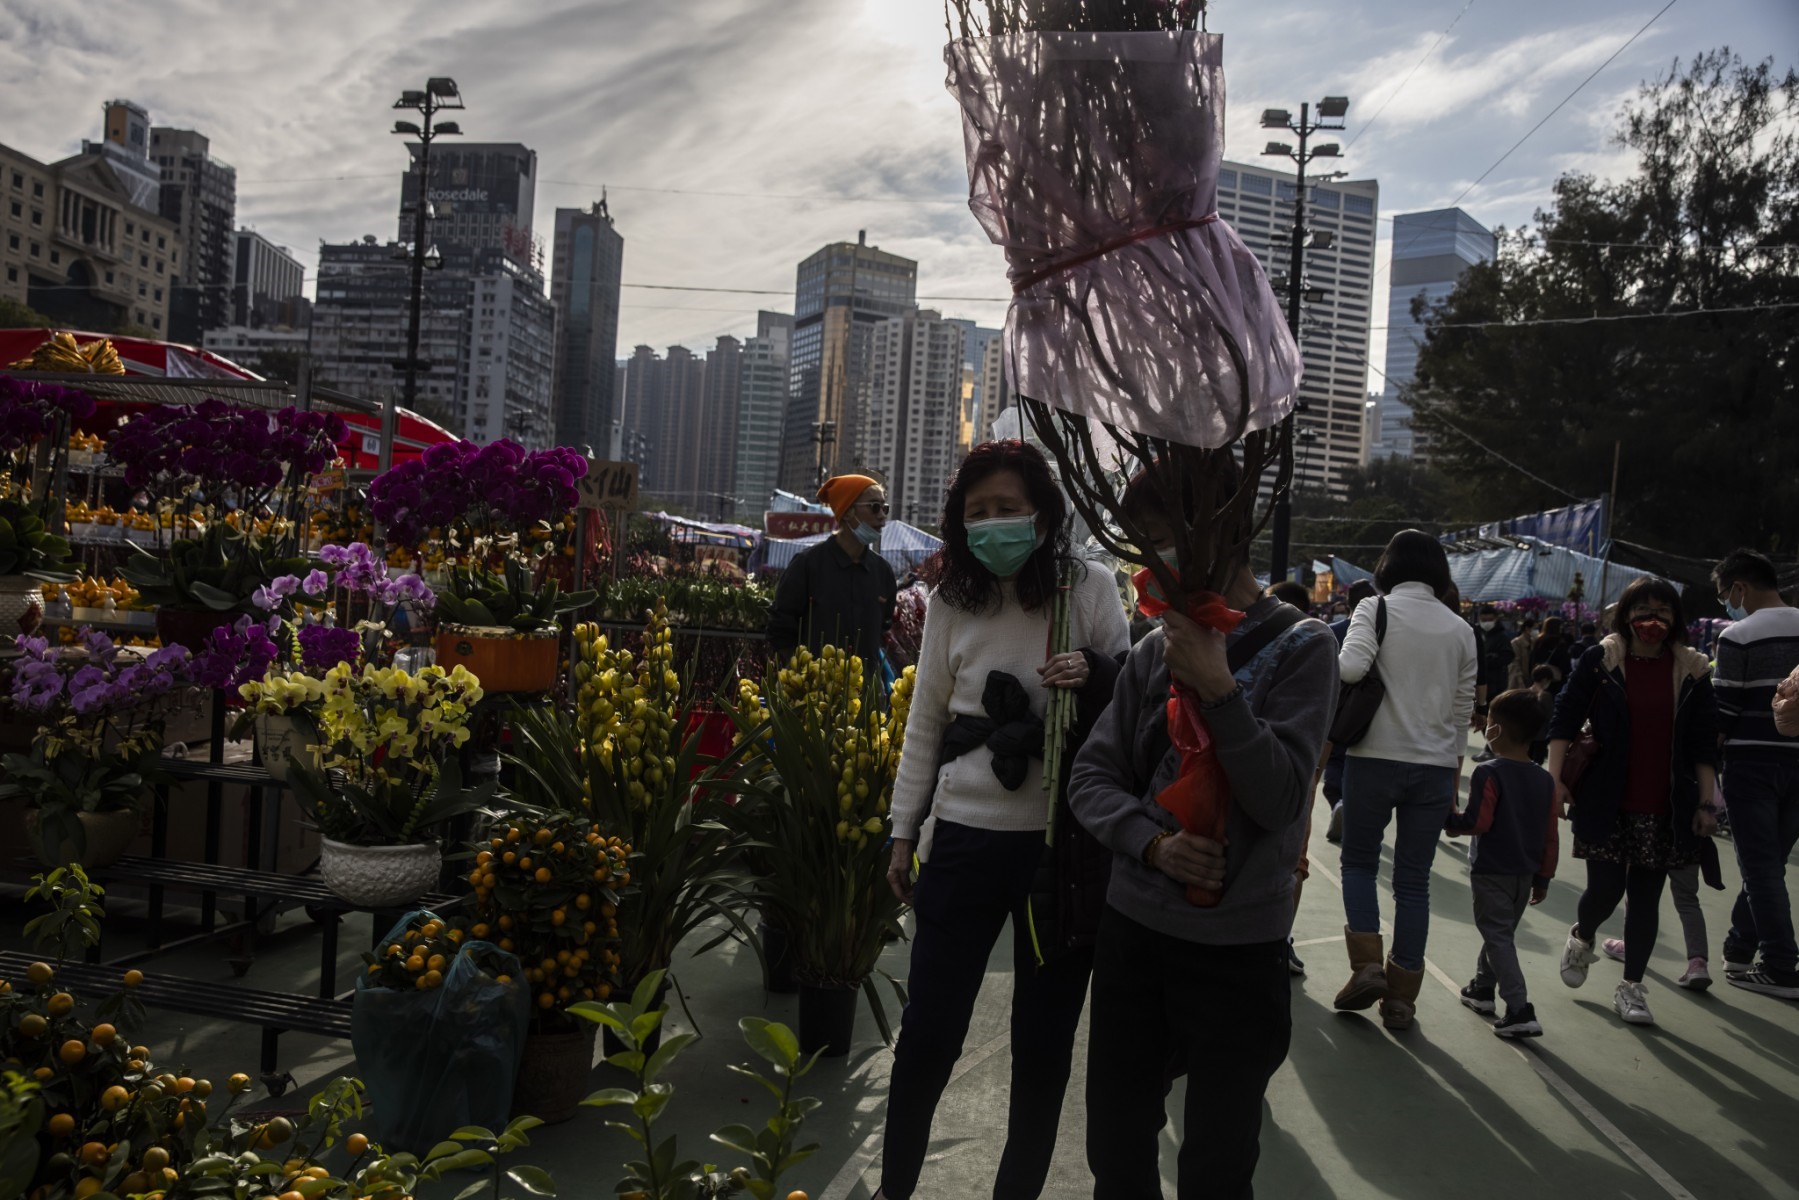 Một người phụ nữ cầm hoa mua tại chợ Tết Nguyên đán ở Hong Kong (Trung Quốc) ngày 20.1, tức ngày 29 Tết. Ảnh: AFP